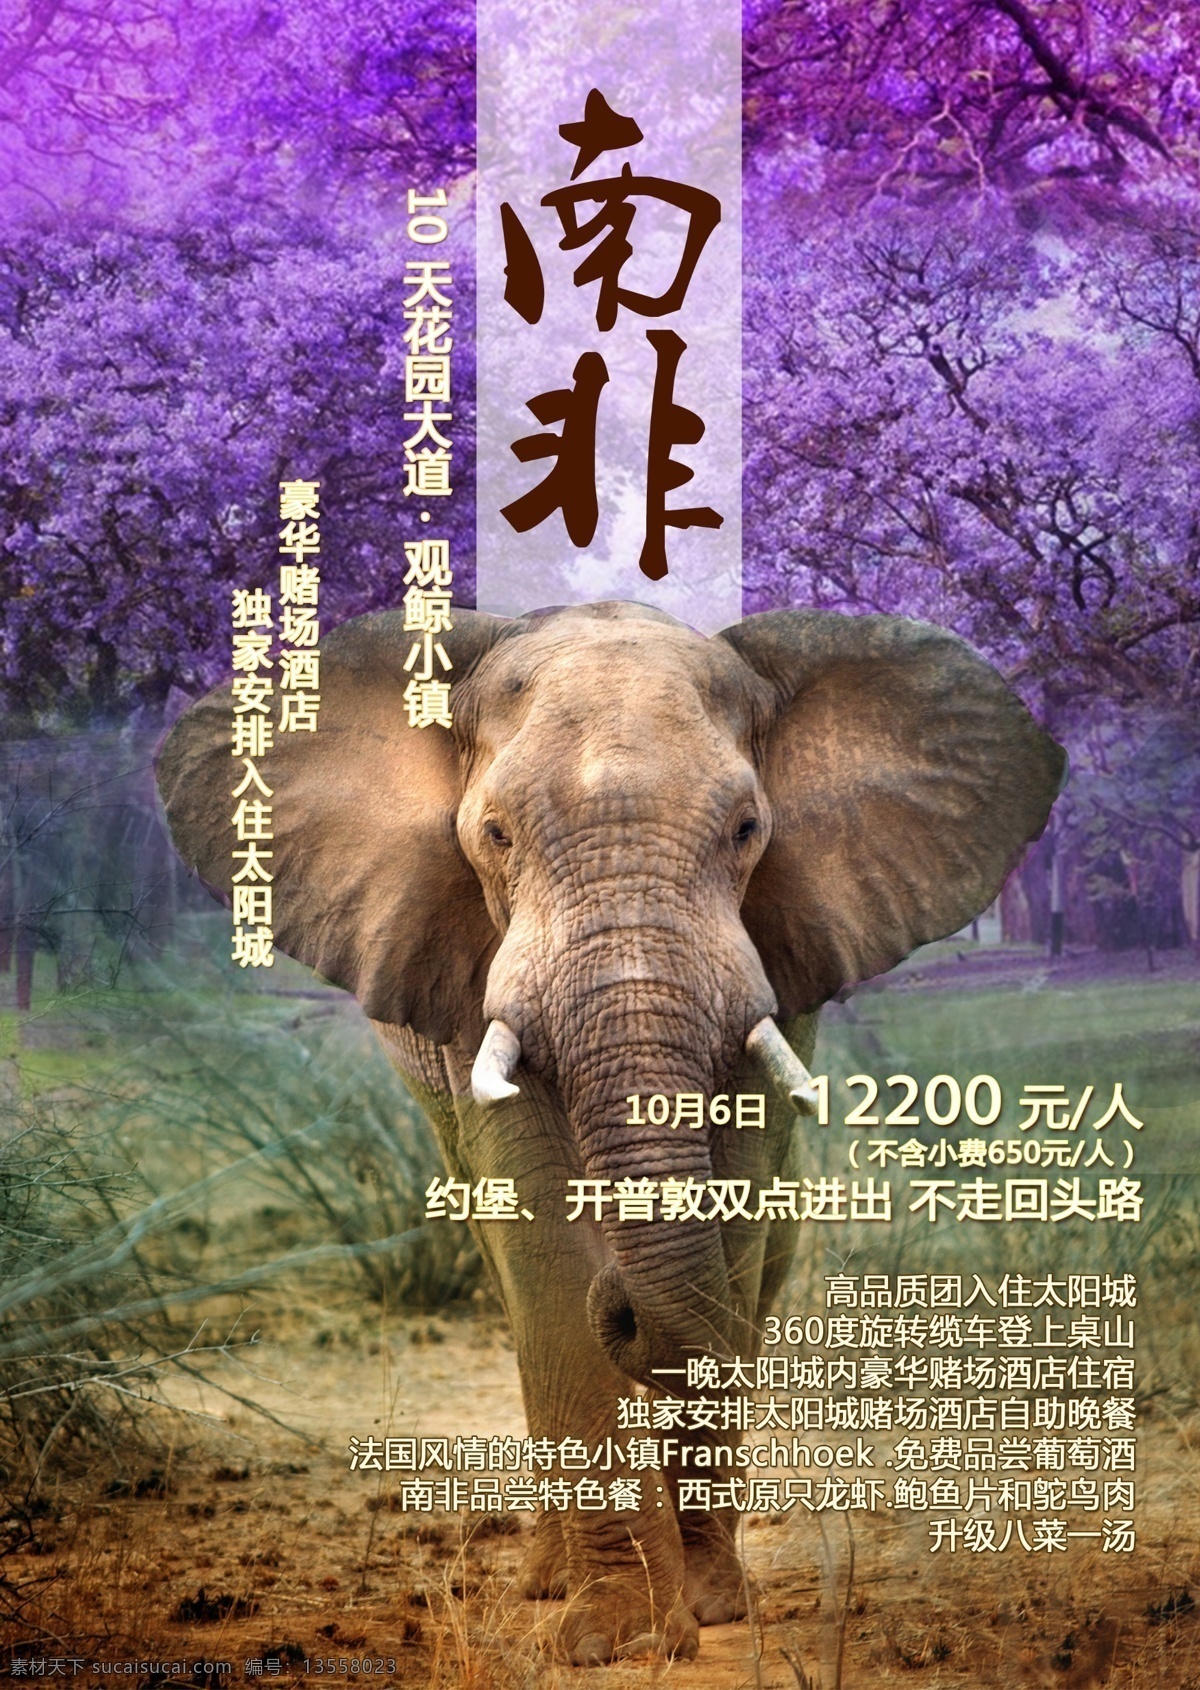 广告 南非 大象 紫薇 花 紫薇花 旅游 团期